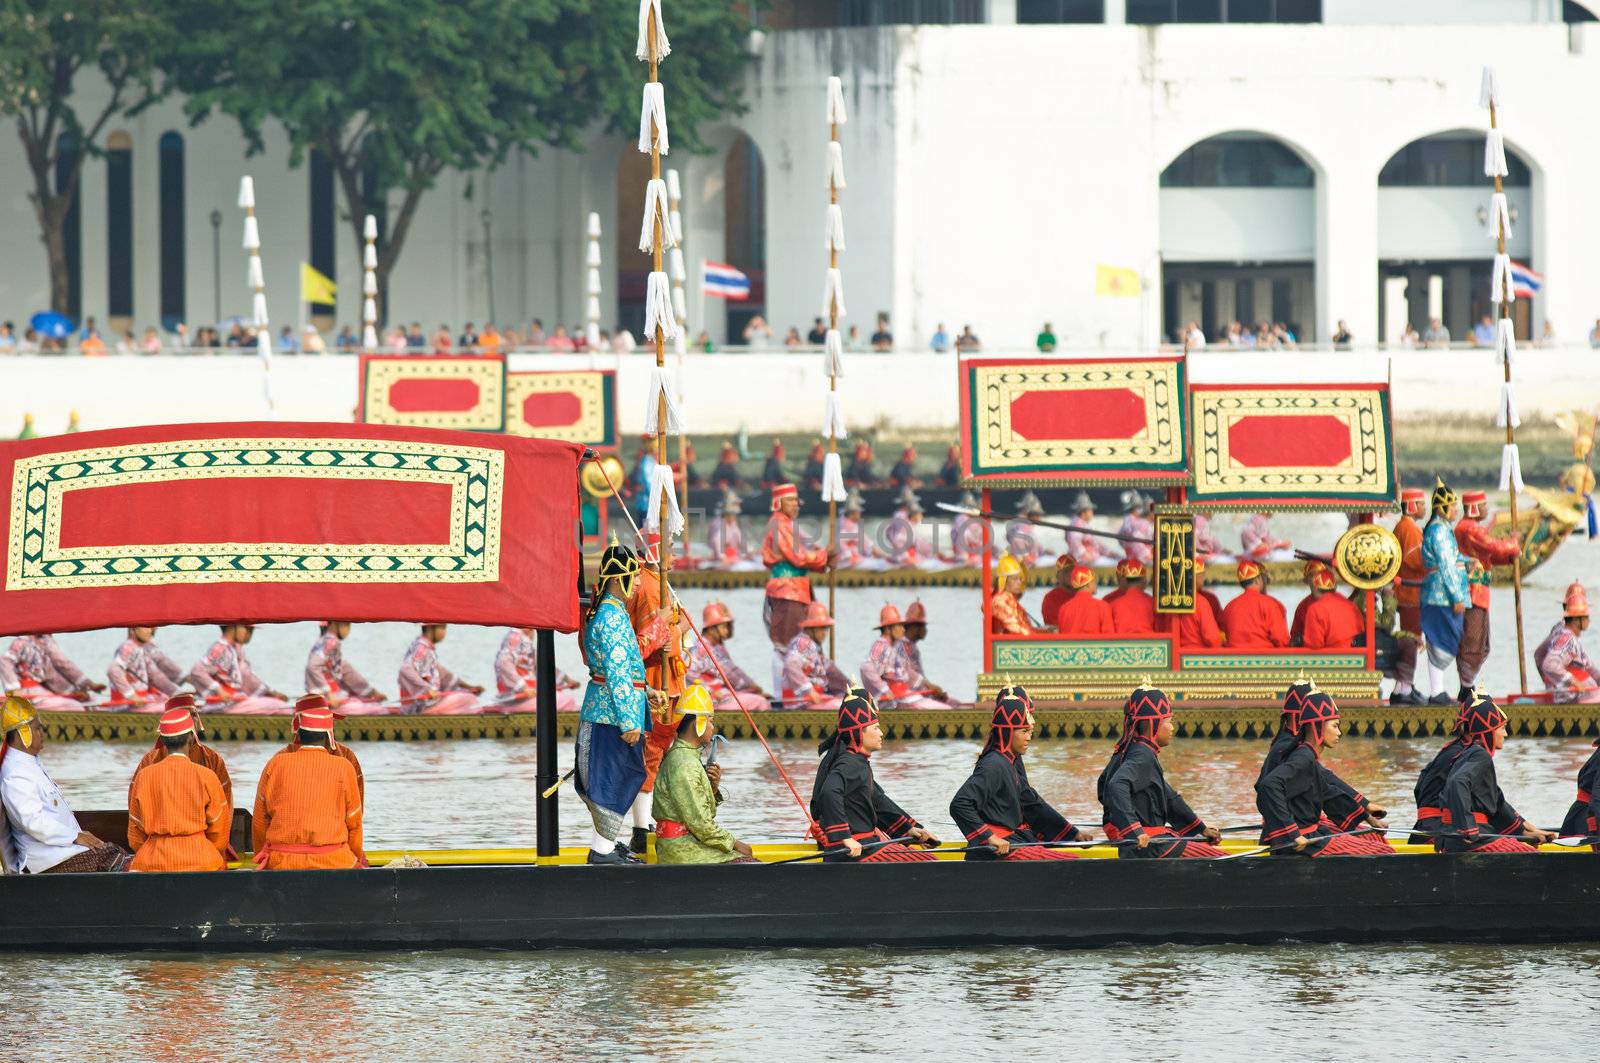 BANGKOK - NOVEMBER 2: Boats participating at a dress rehearsal for the Royal Barge Procession to celebrate the 85th birthday of King Bhumibol Adulyadej in Bangkok, Thailand on November 2, 2012.